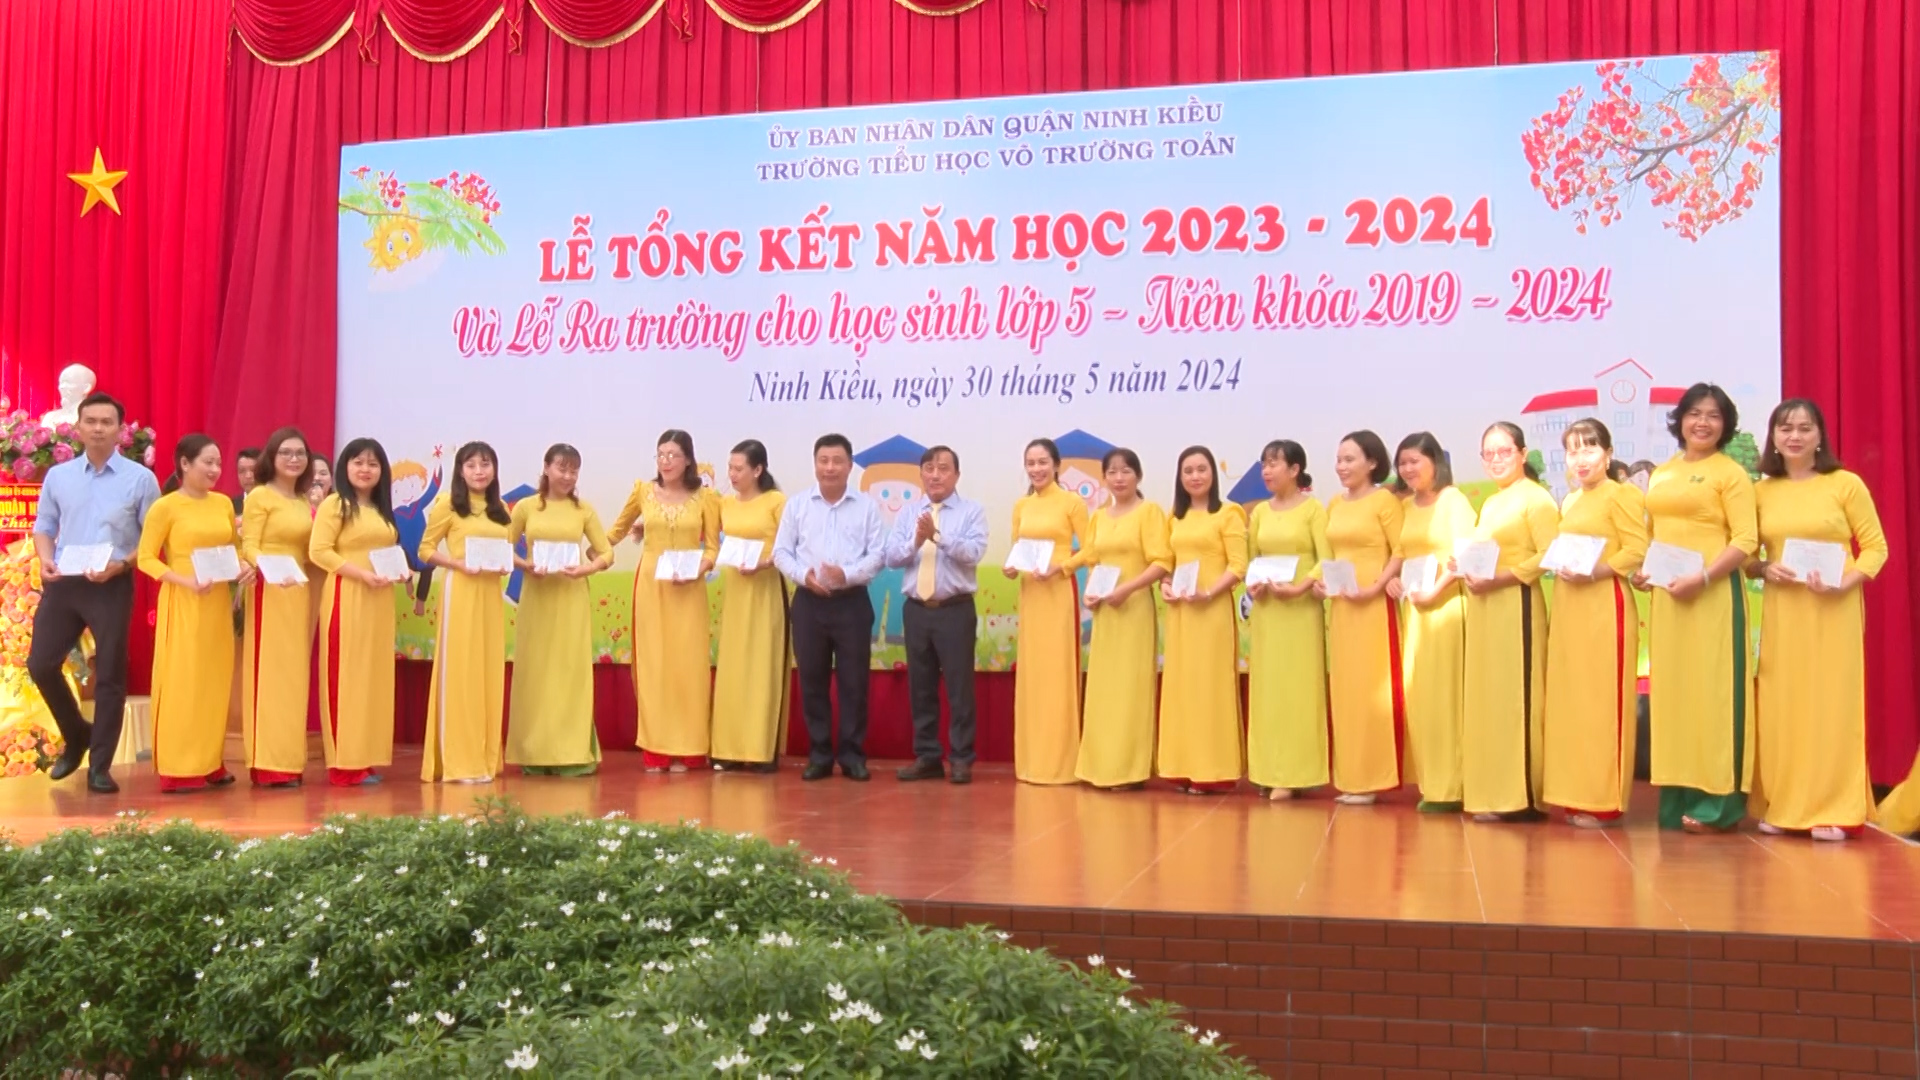 Đồng chí Nguyễn Tiền Phong – Ủy viên Ban thường vụ Thành ủy – Bí thư Quận ủy Ninh Kiều trao giấy khen cho các thầy cô có thành tích tốt trong công tác